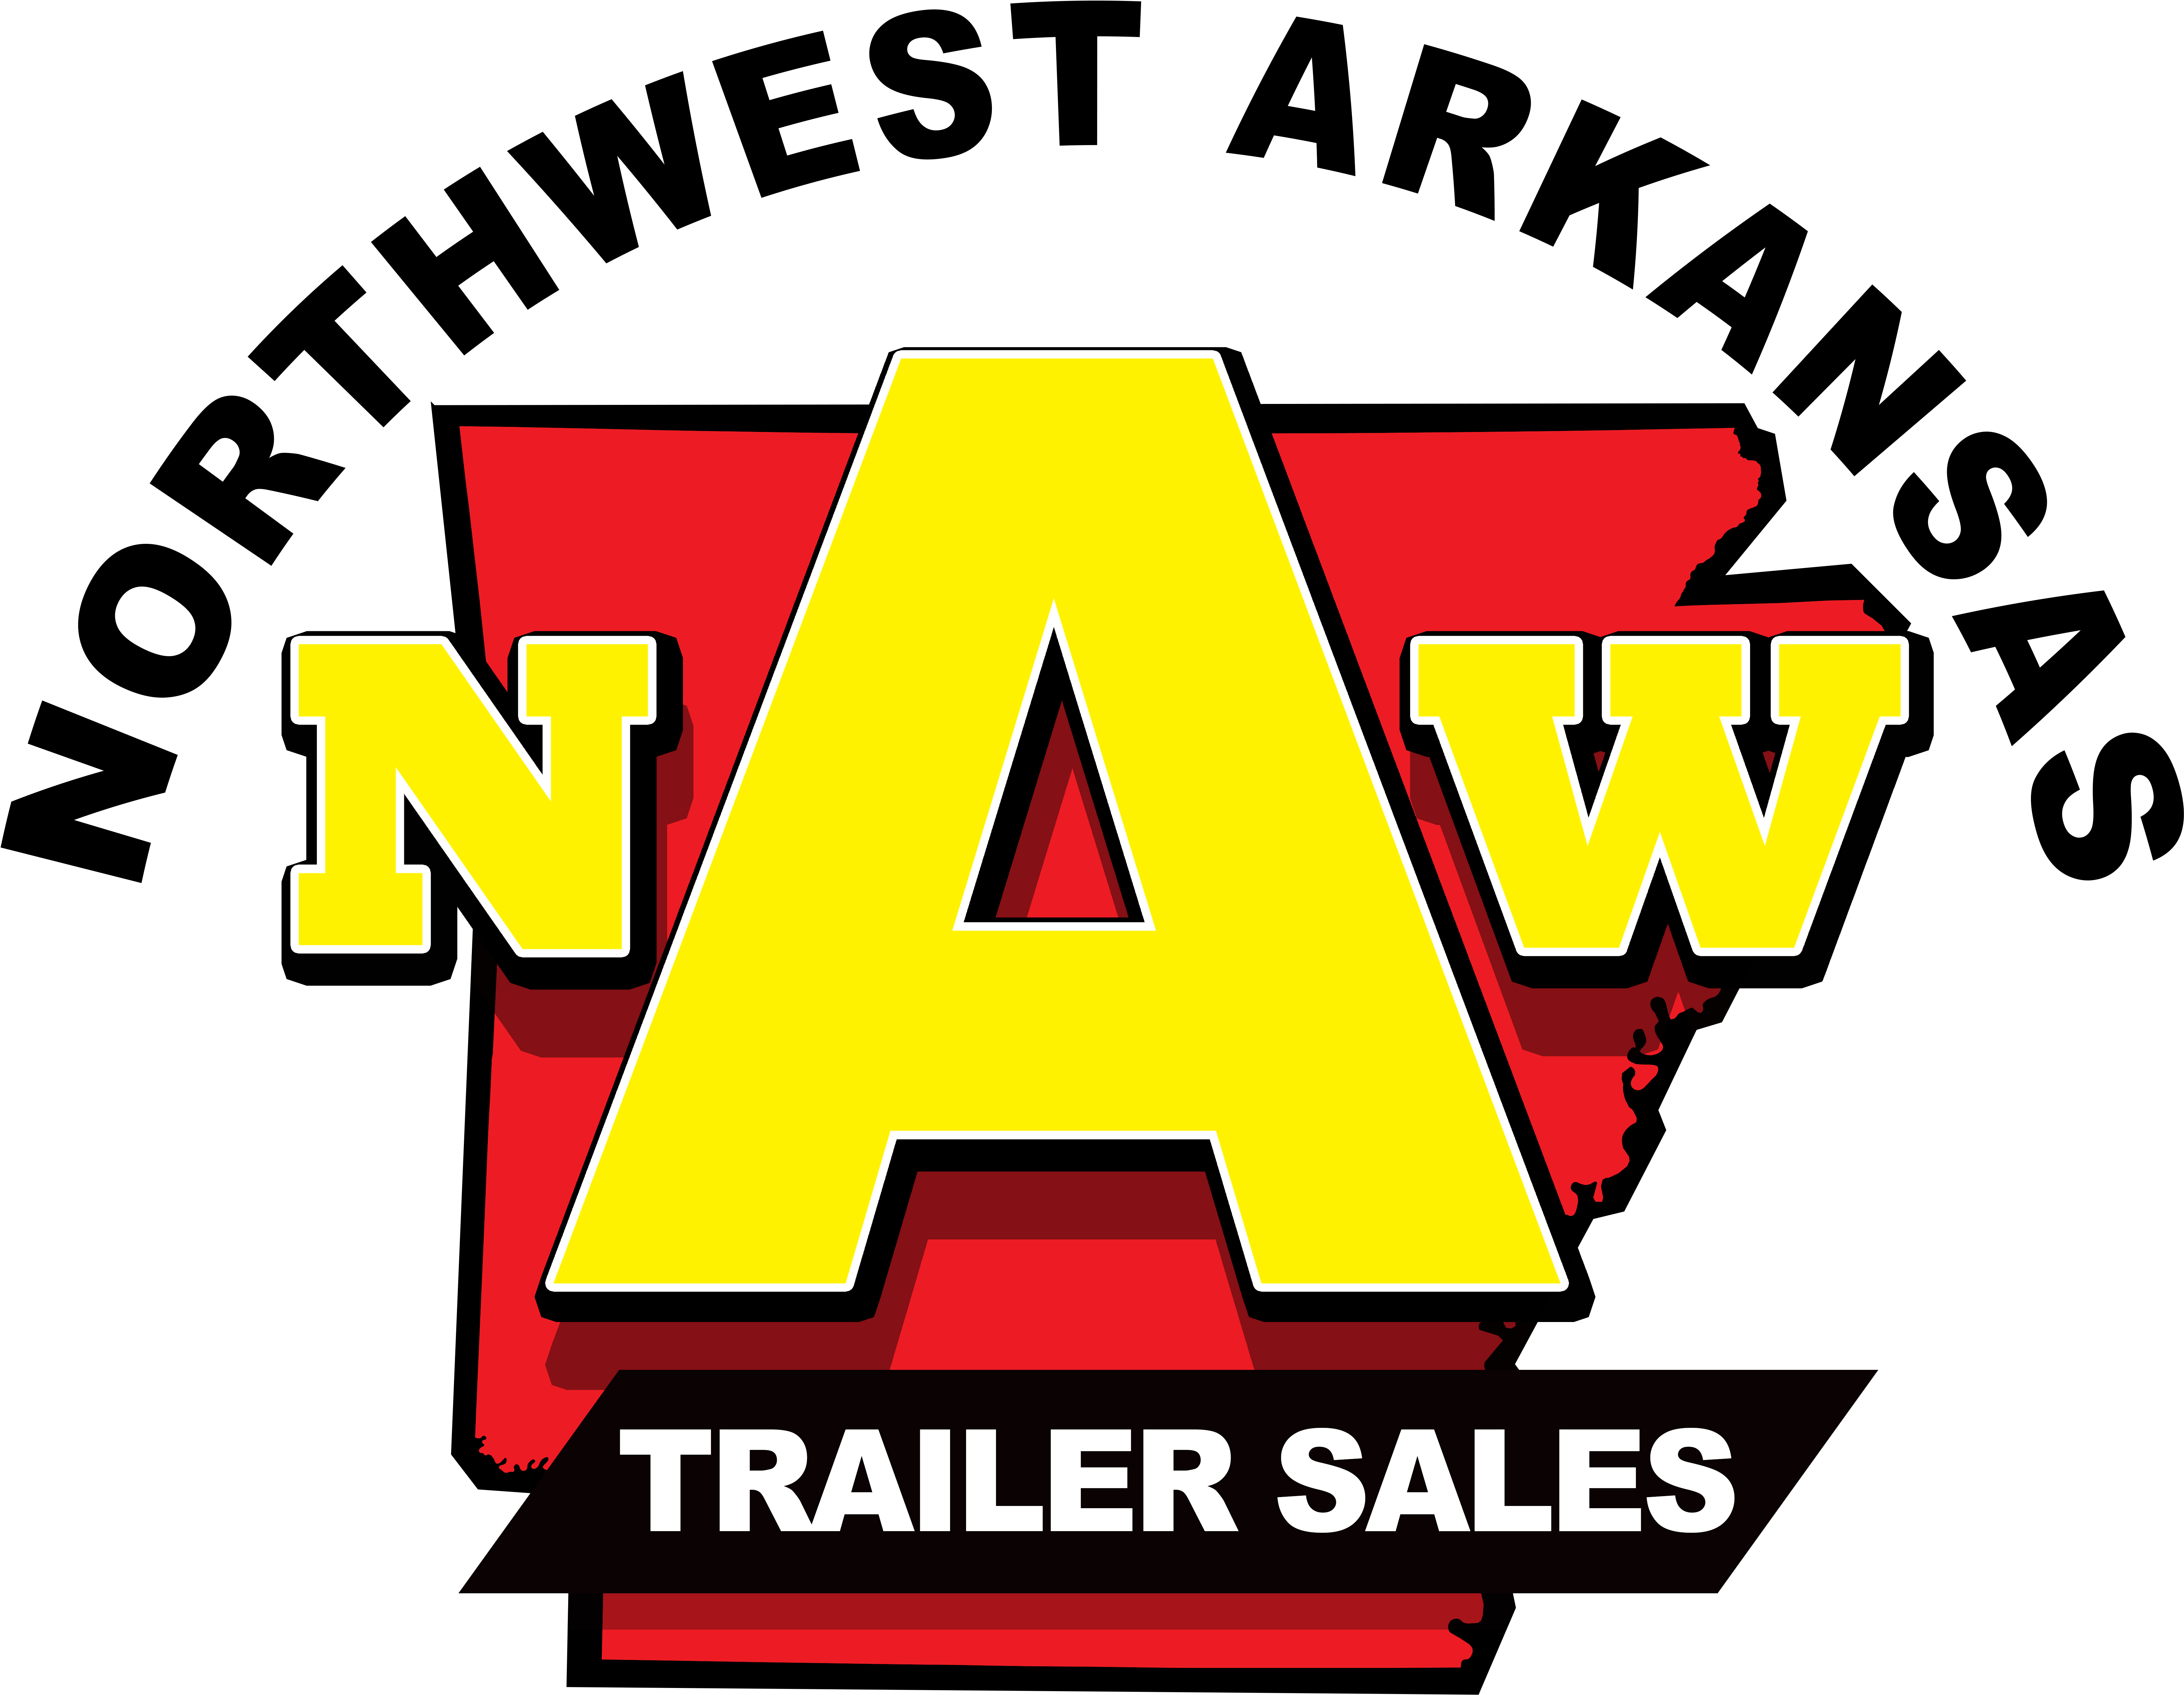 Northwest Arkansas Trailer Sales - Northwest Arkansas Trailer Sales (7293x5622)